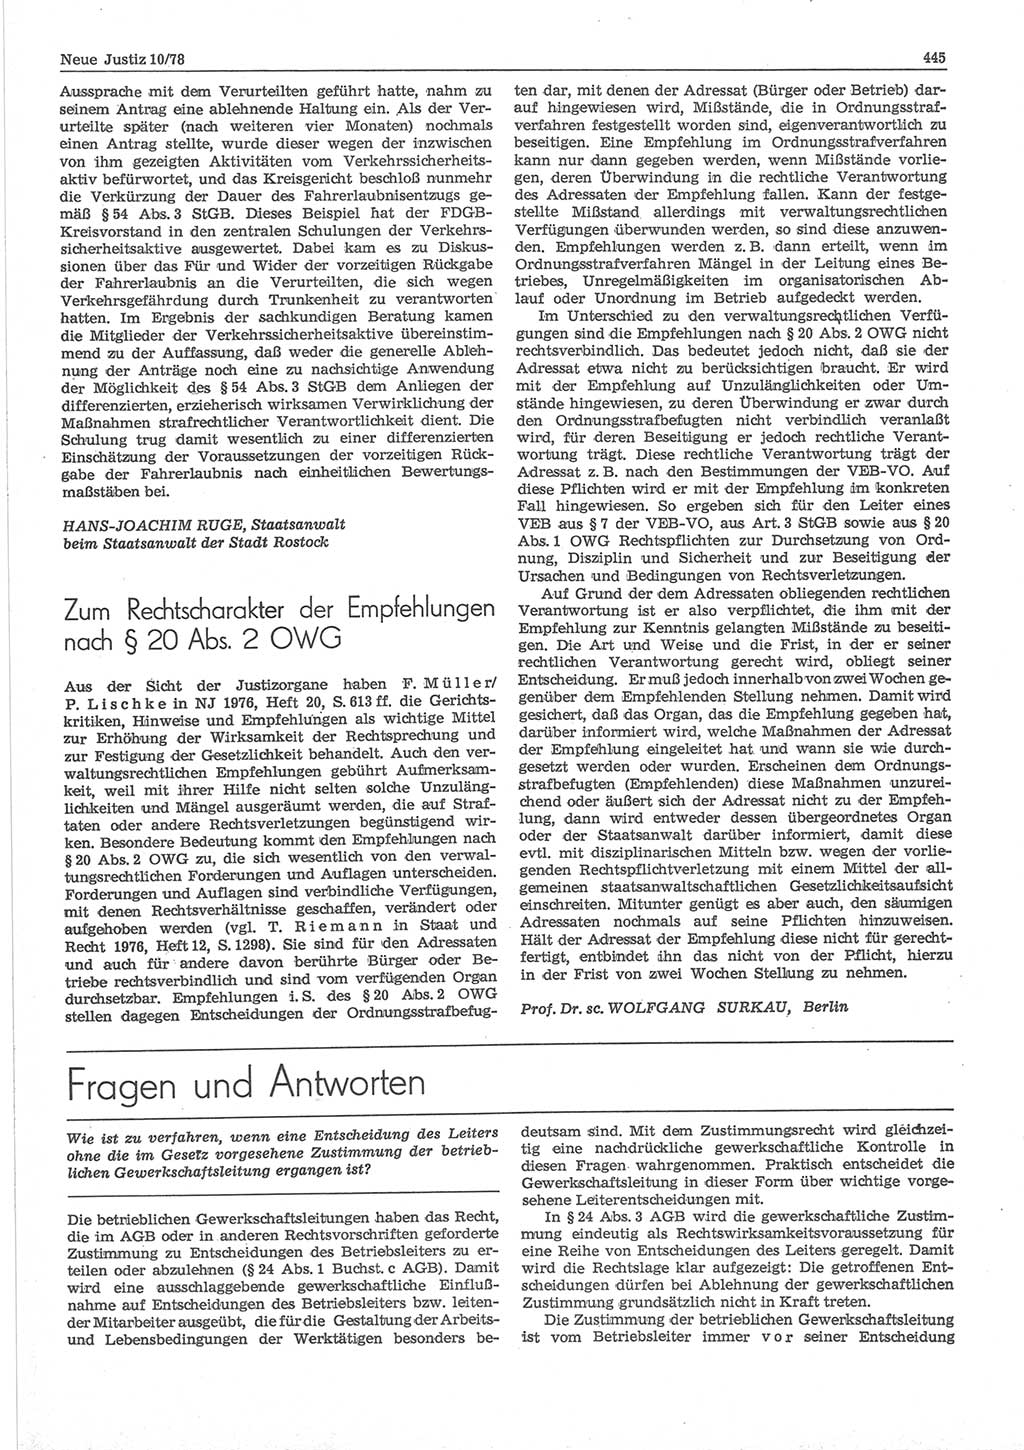 Neue Justiz (NJ), Zeitschrift für sozialistisches Recht und Gesetzlichkeit [Deutsche Demokratische Republik (DDR)], 32. Jahrgang 1978, Seite 445 (NJ DDR 1978, S. 445)